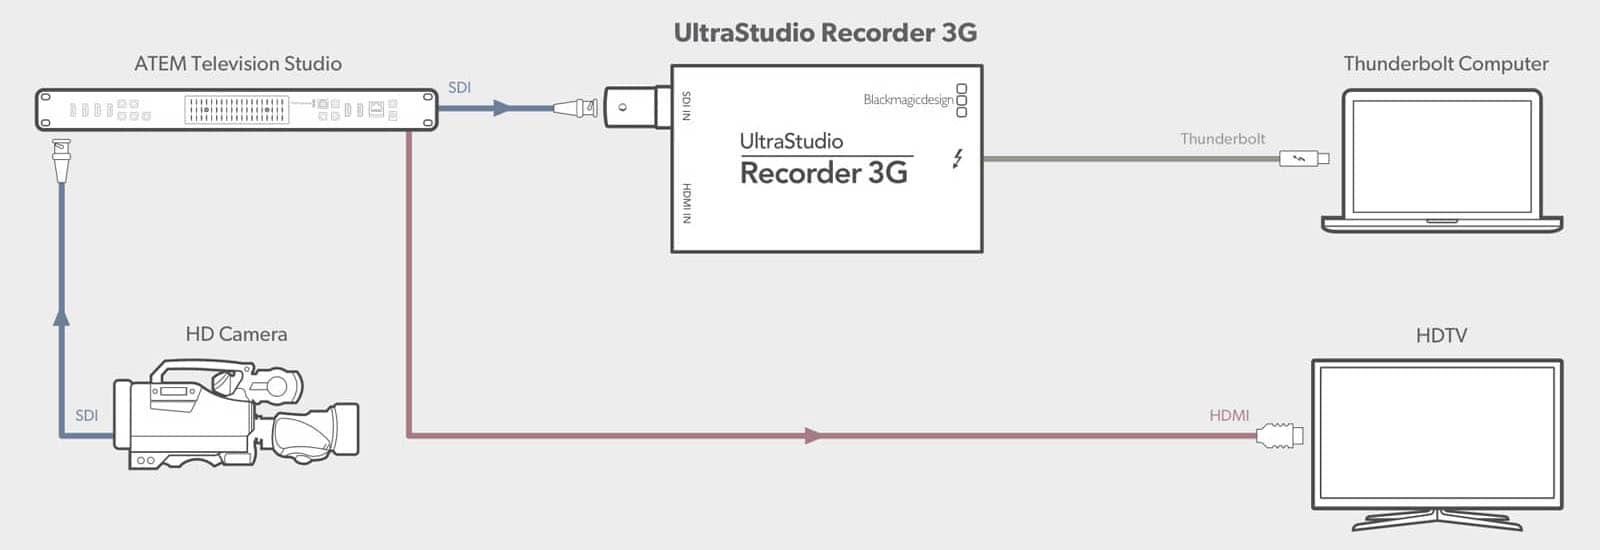 Diagrama de conexión del UltraStudio Recorder 3G con mixers